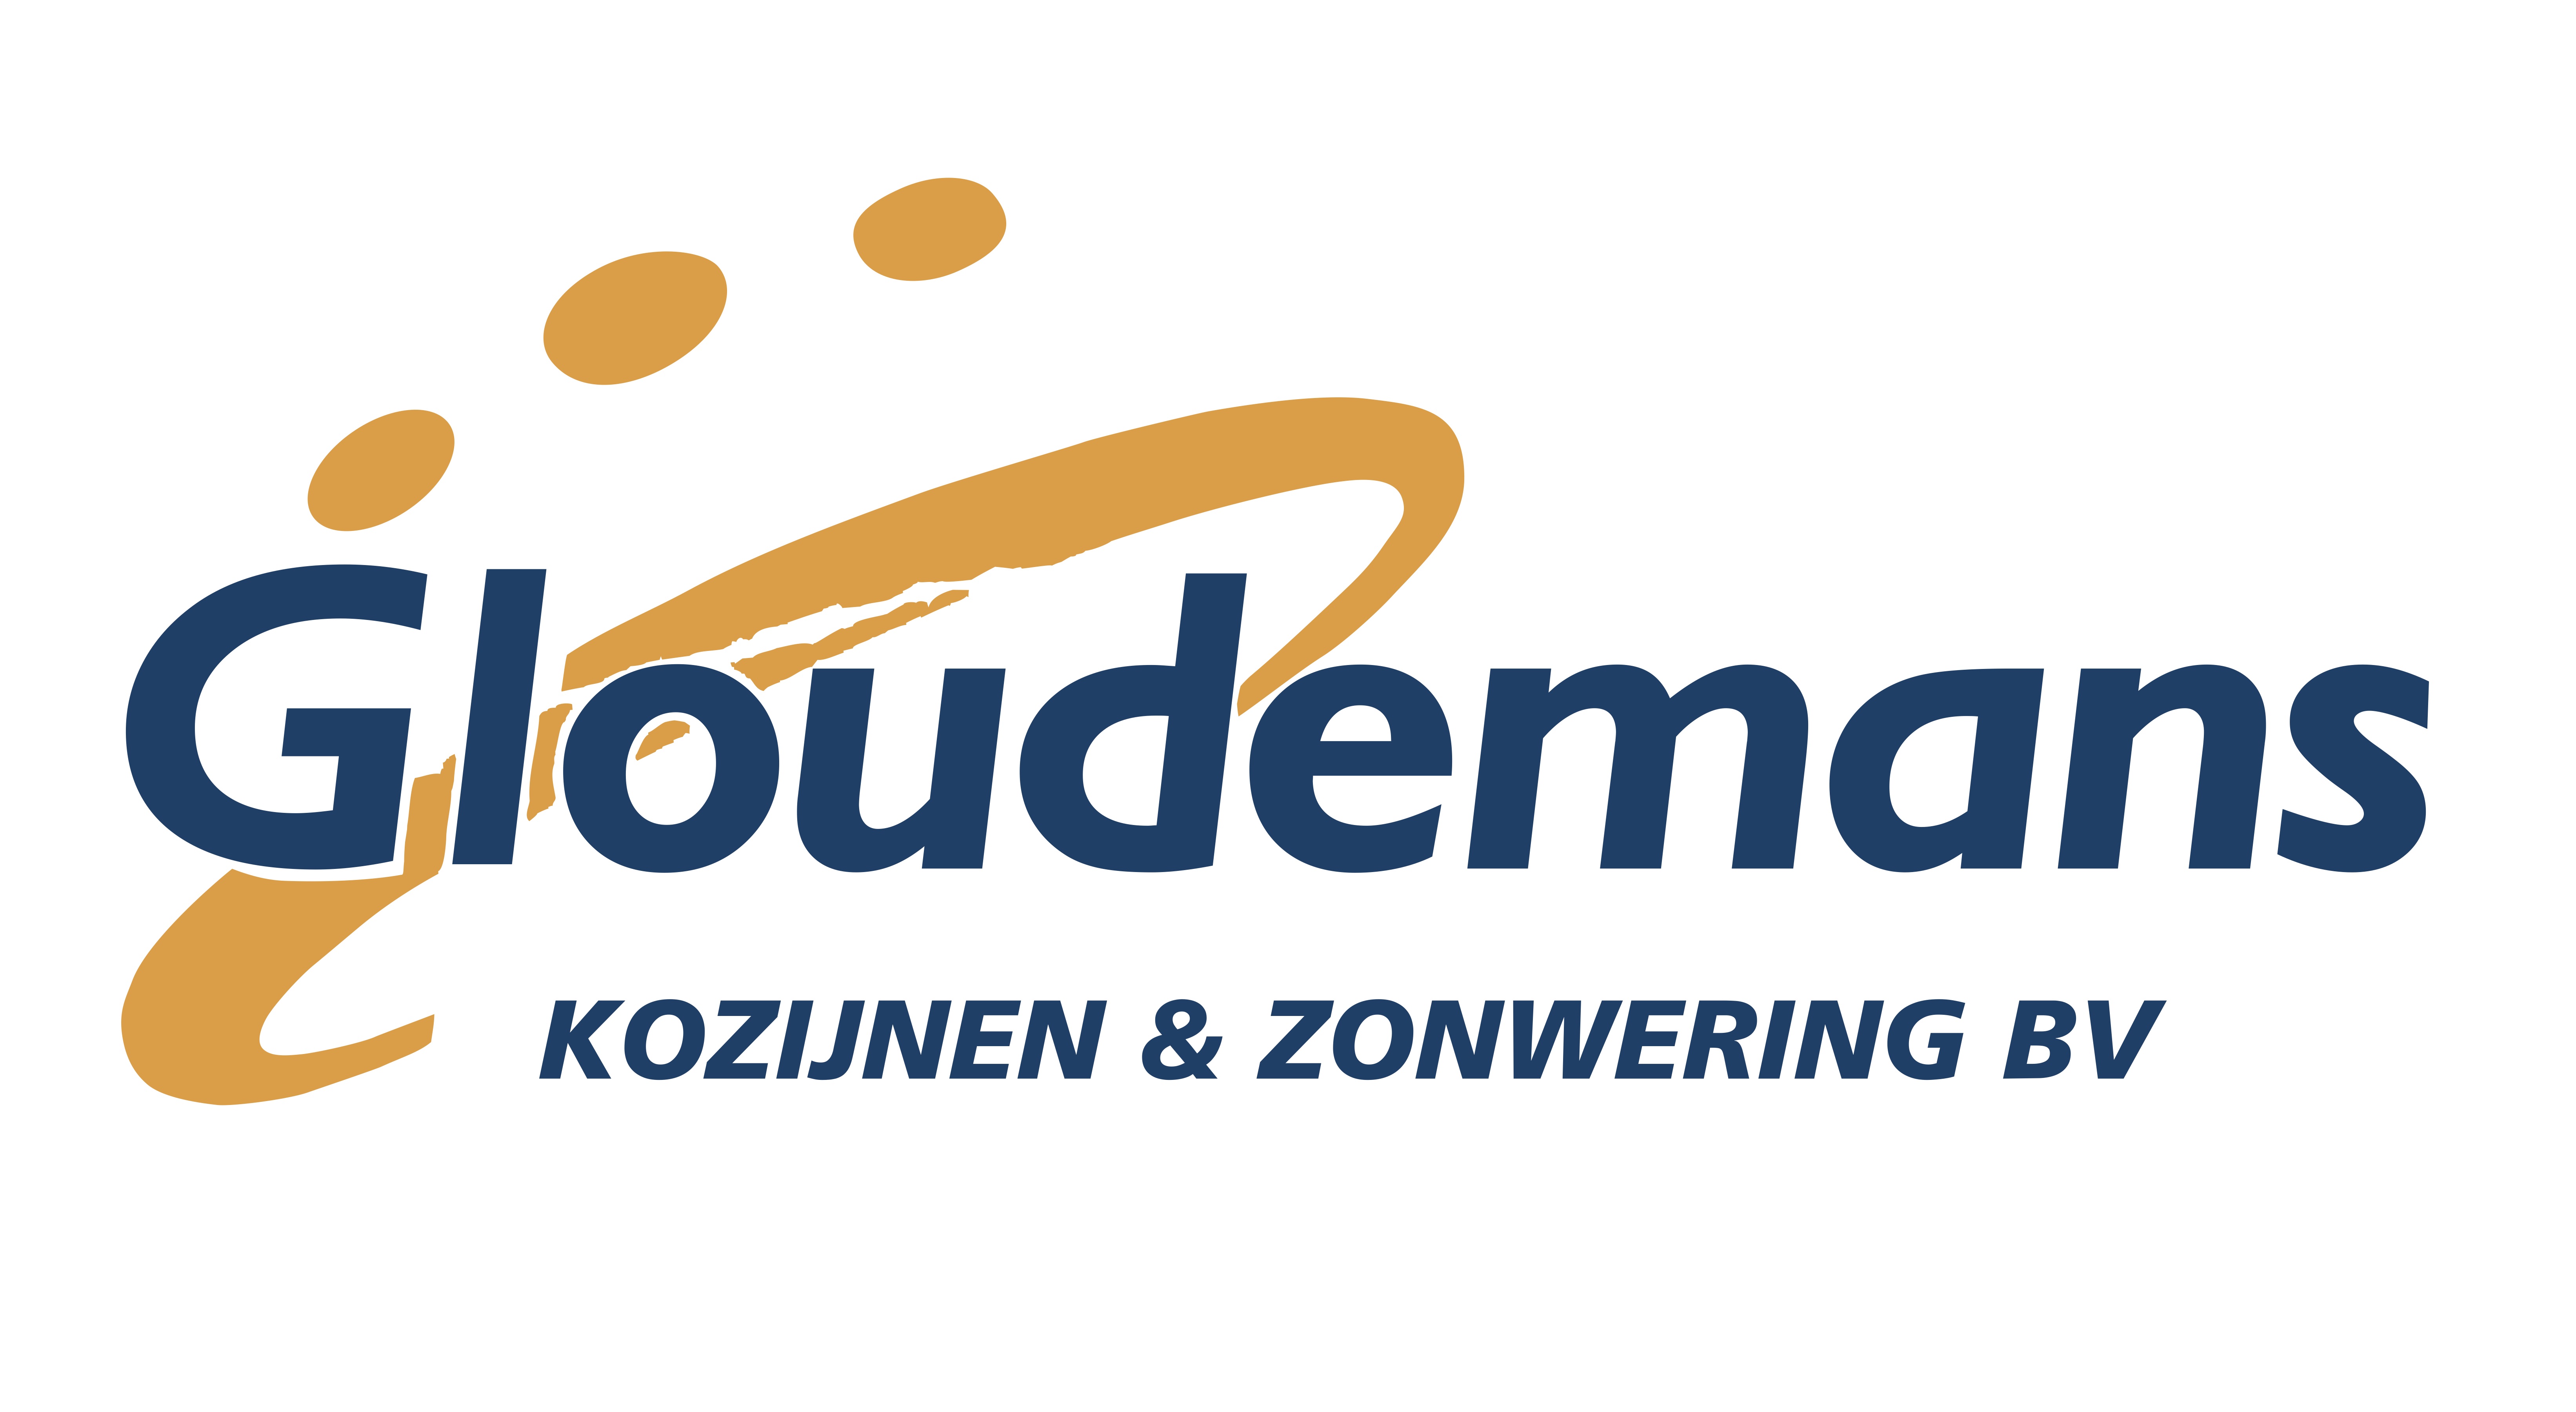 Gloudemans_KozijnenZonwering_logo_2015 pdfnieuw (3) kopie